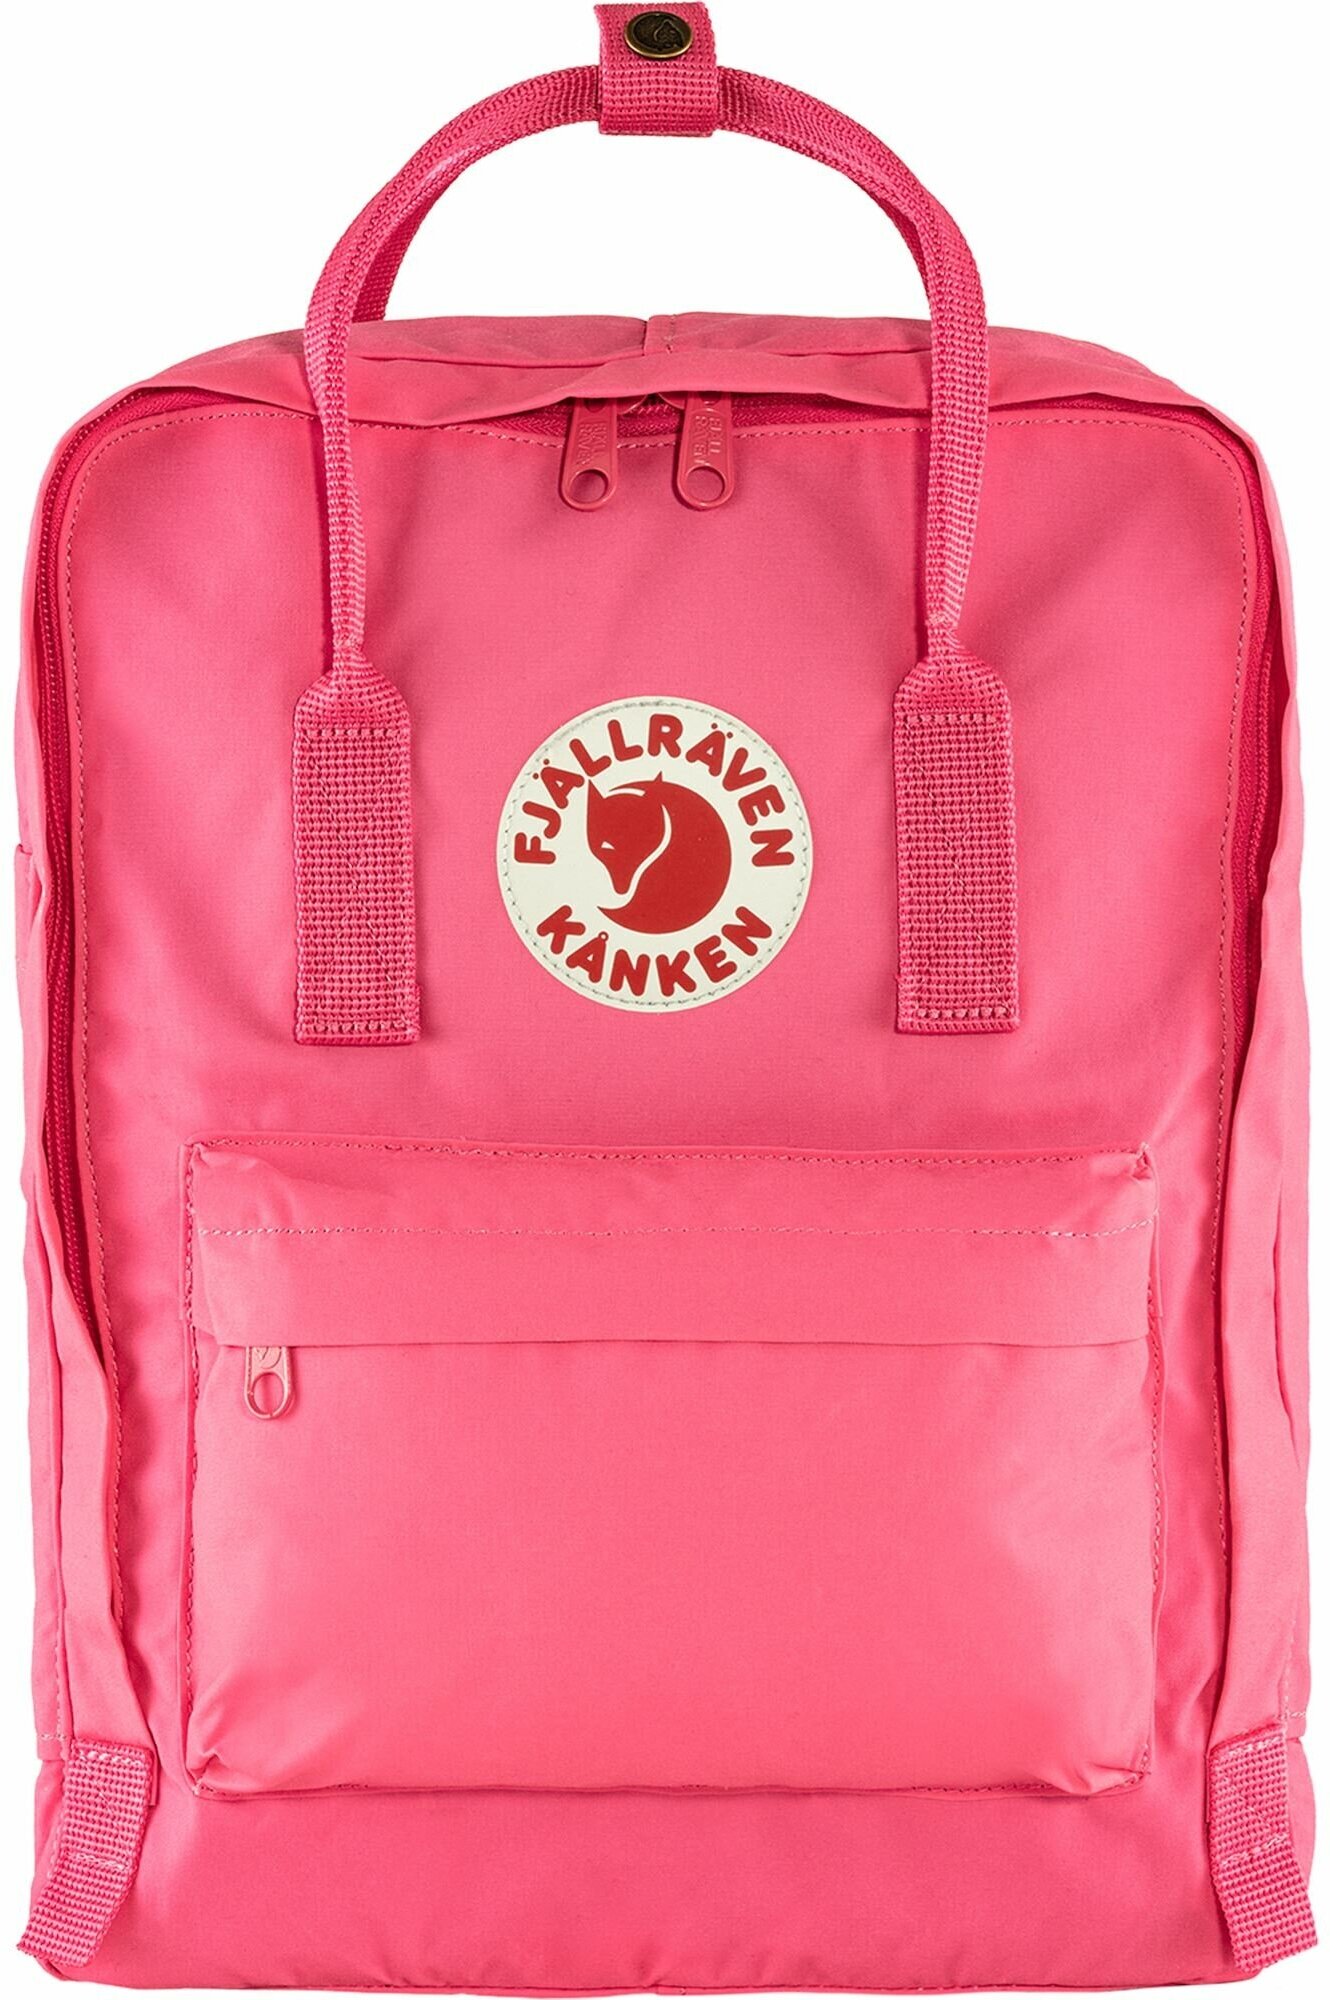 Городской рюкзак Fjallraven Kanken Mini, flamingo pink